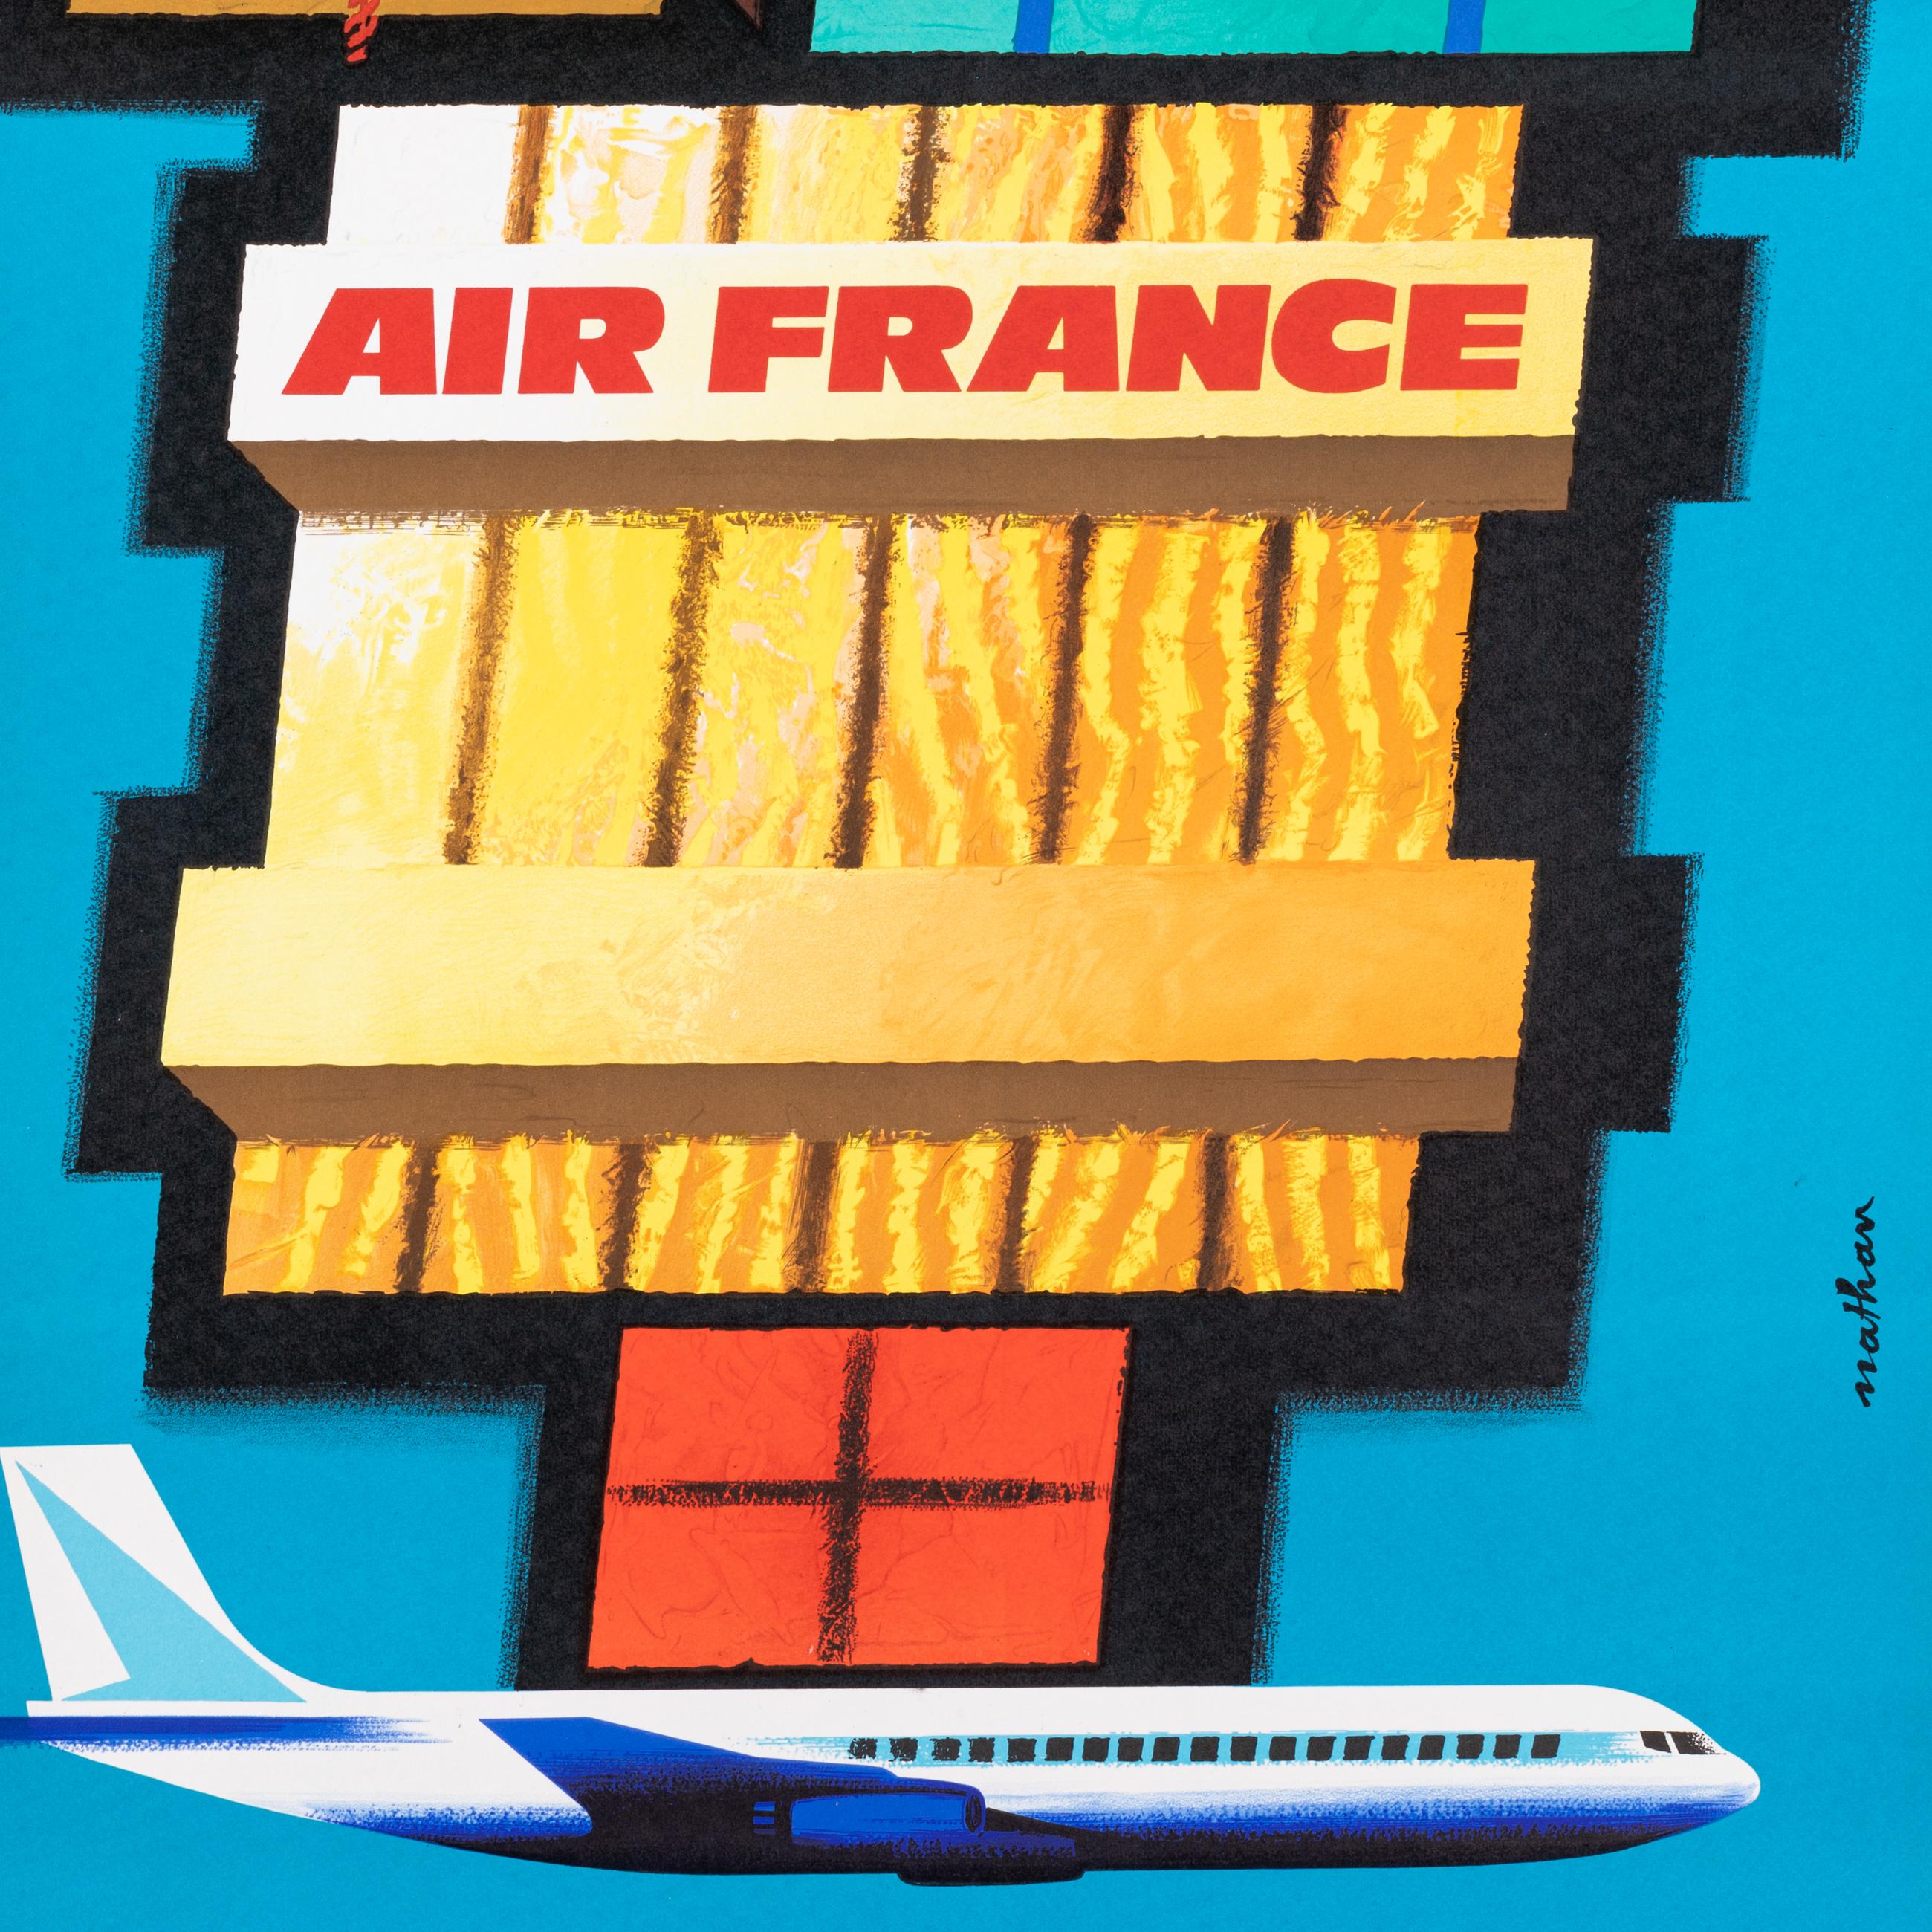 Original Vintage Poster für Air France von Nathan aus dem Jahr 1962.

Künstler: Nathan
Titel: Air France - Transporte tout, Partout
Datum: 1962
Größe (B x H): 24,6x 39.4 in / 62 x 100 cm
Drucker : Imp. S.A. Courbet_Paris
MATERIALIEN und TECHNIKEN: